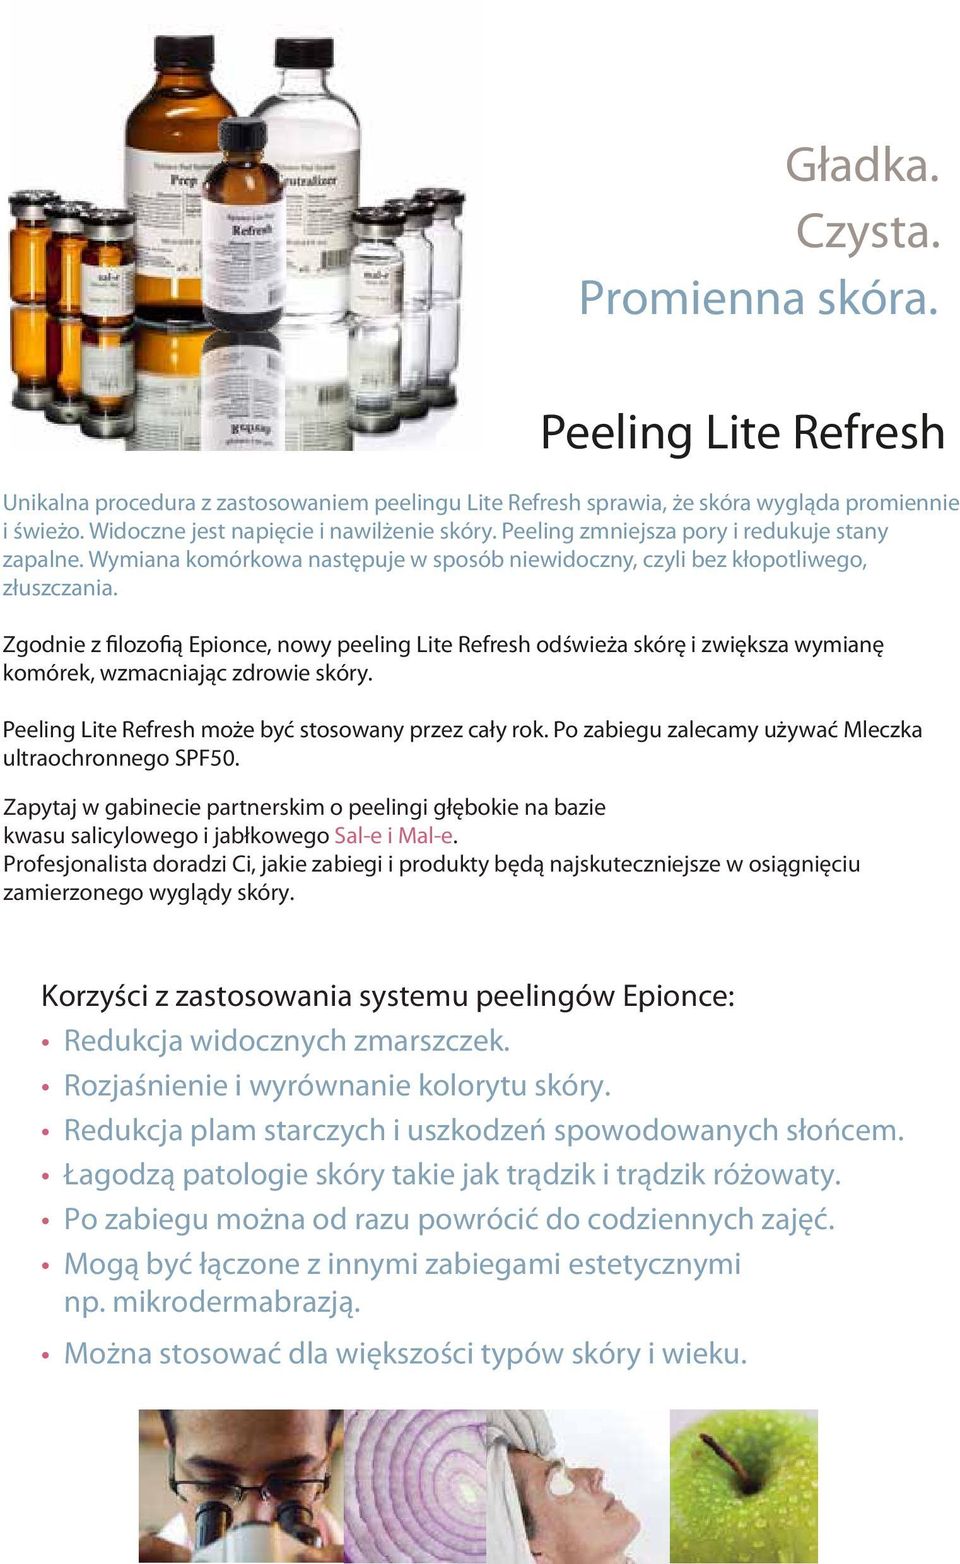 Zgodnie z filozofią Epionce, nowy peeling Lite Refresh odświeża skórę i zwiększa wymianę komórek, wzmacniając zdrowie skóry. Peeling Lite Refresh może być stosowany przez cały rok.